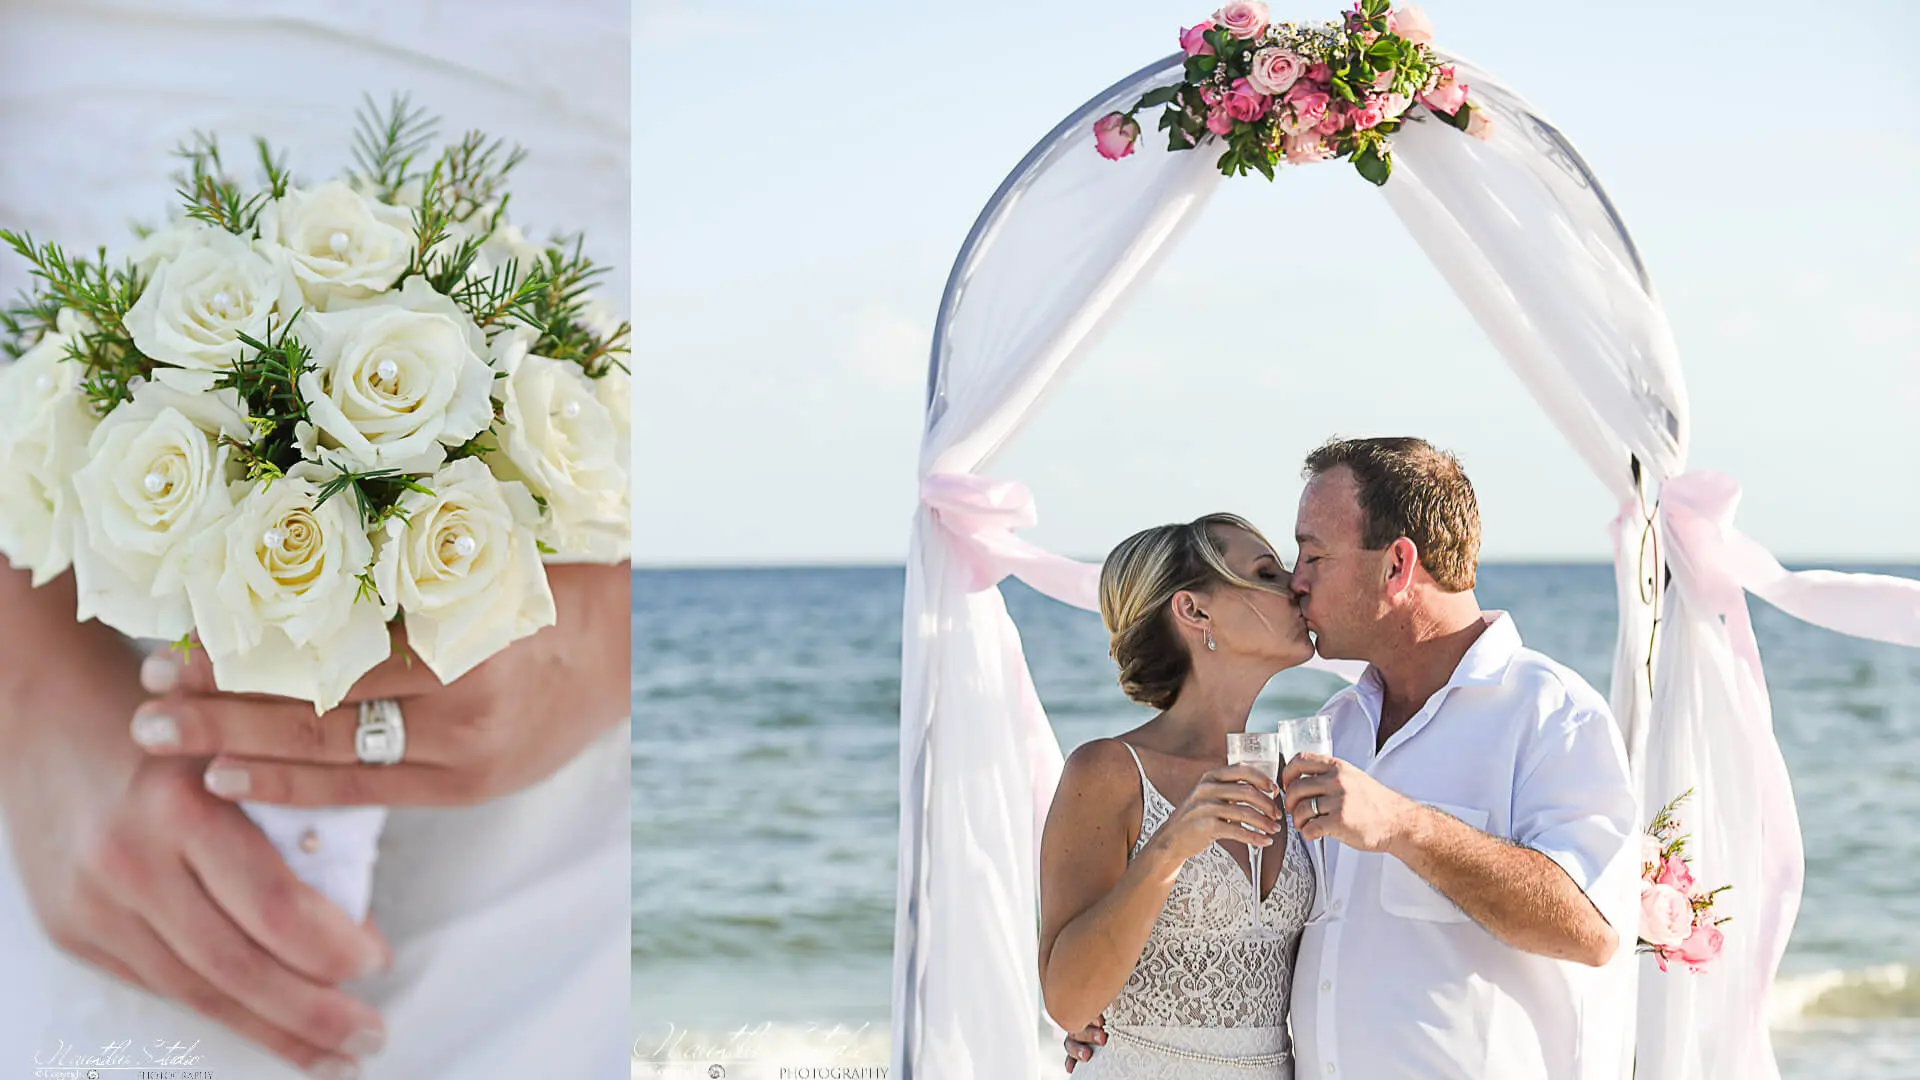 Strandhochzeit für Zwei Florida, Bild vom Brautpaar unterm Hochzeitsbogen